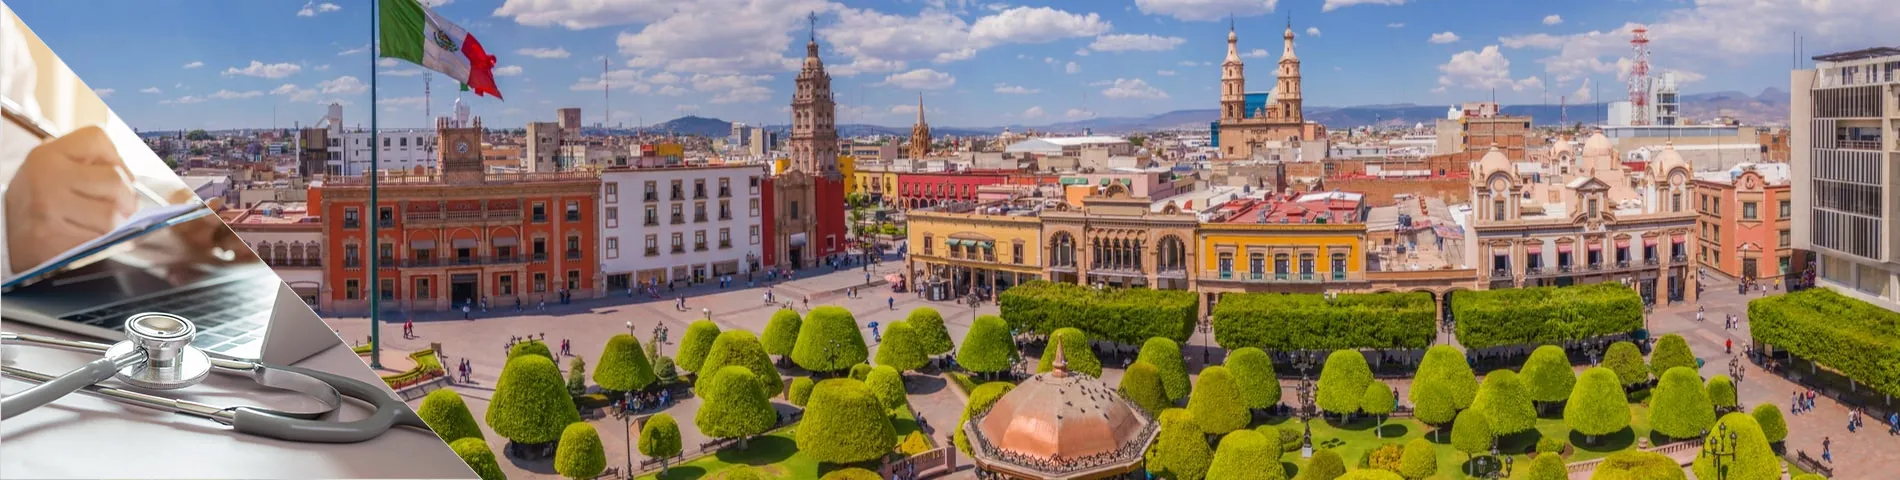 Guanajuato - Spanyol Egészségügyi